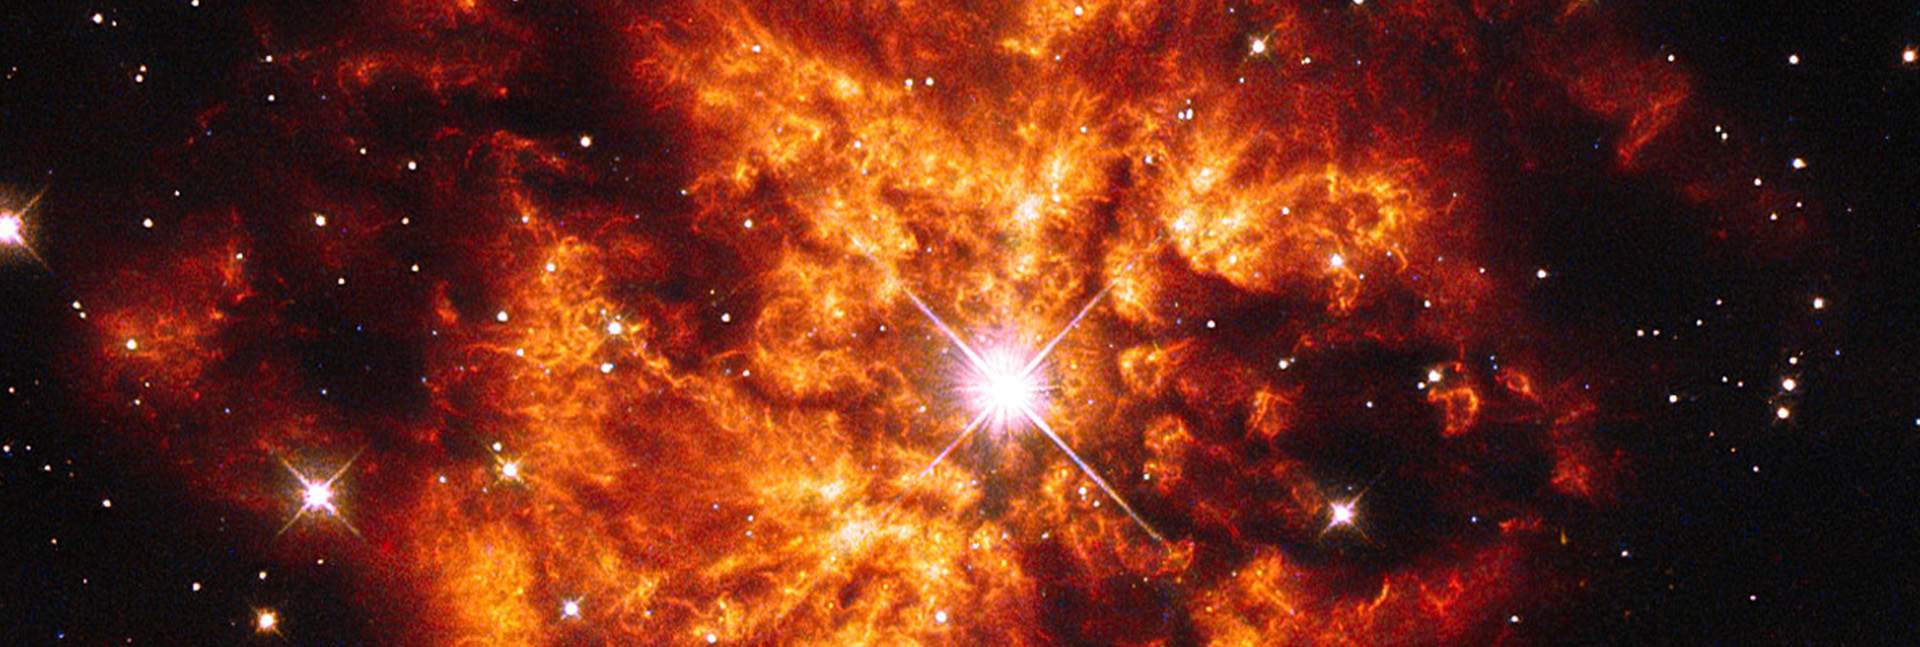 כוכב וולף-ראייה והערפילית שעוטפת אותו כפי שנקלטו בעדשת טלסקופ החלל האבל של נאס"א ושל סוכנות החלל האירופית. במחקר החדש נצפתה לראשונה סופרנובה בכוכב מסוג זה // NASA/ESA Hubble Space Telescope